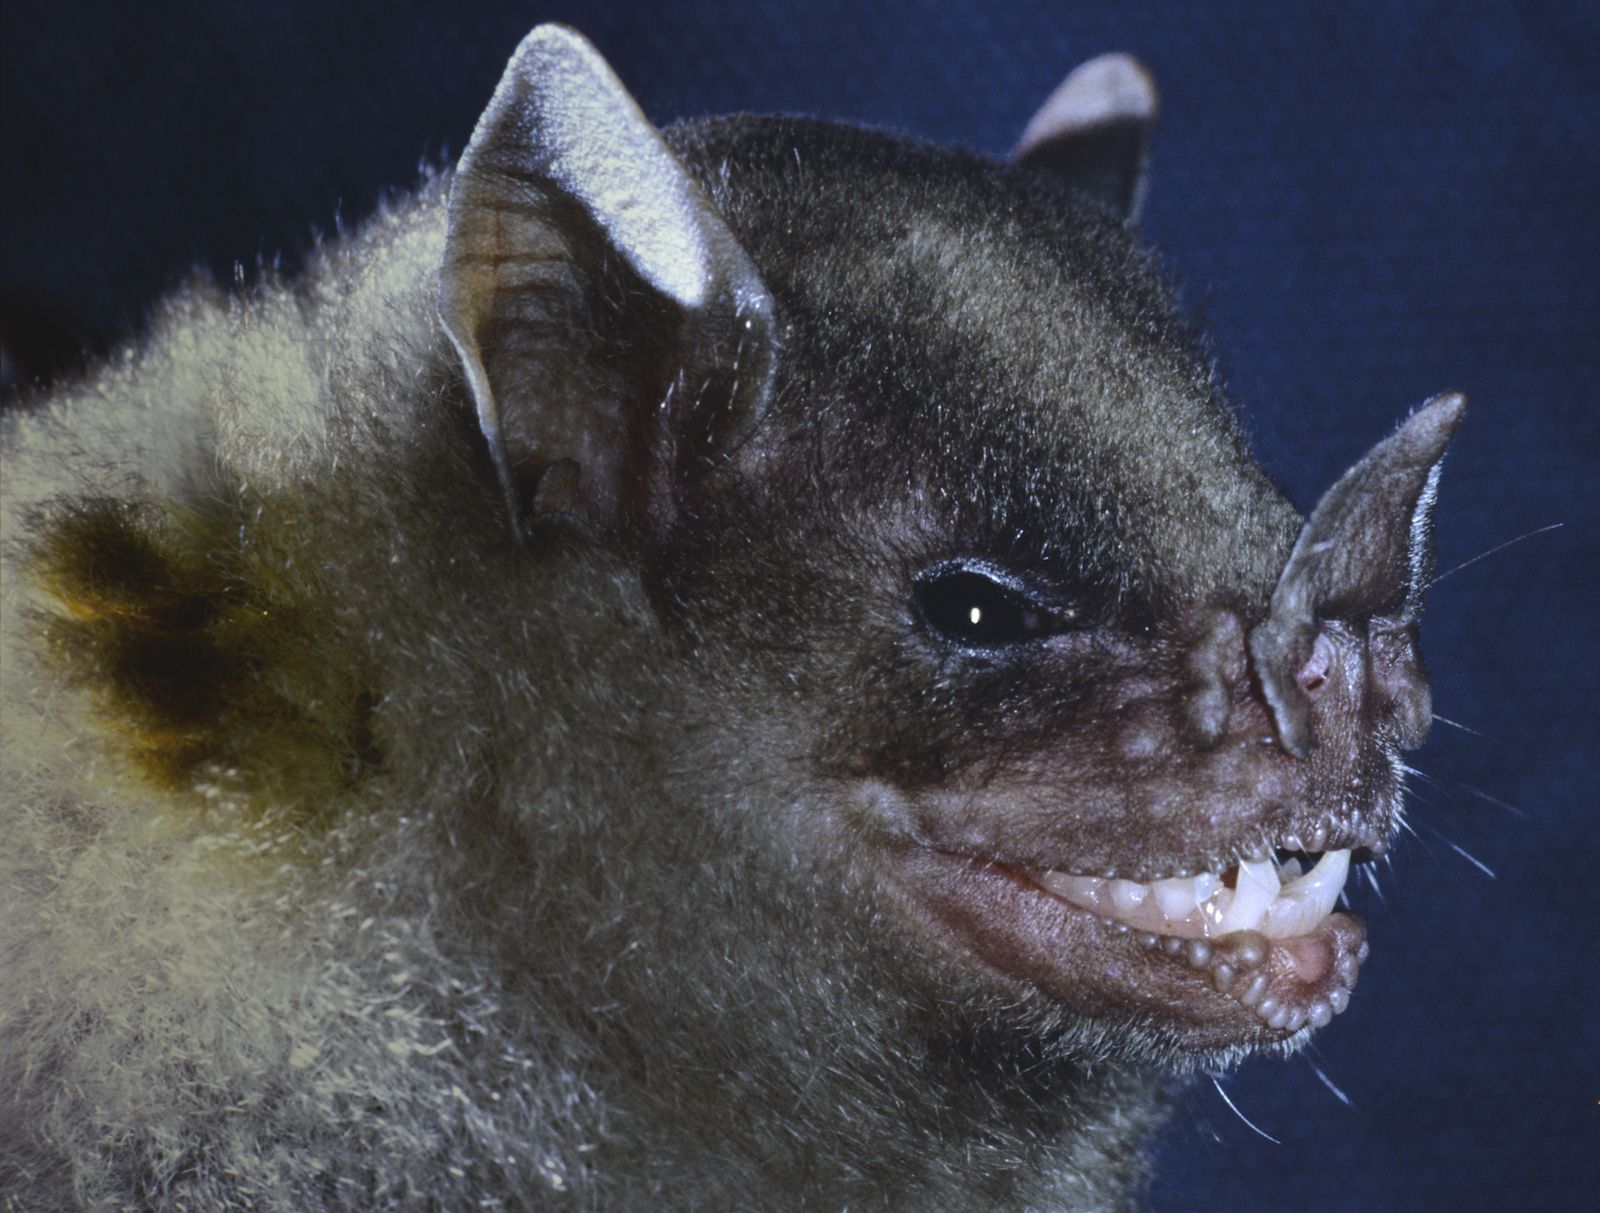 A leaf nosed bat | Pics | Pinterest | Bats and Leaves